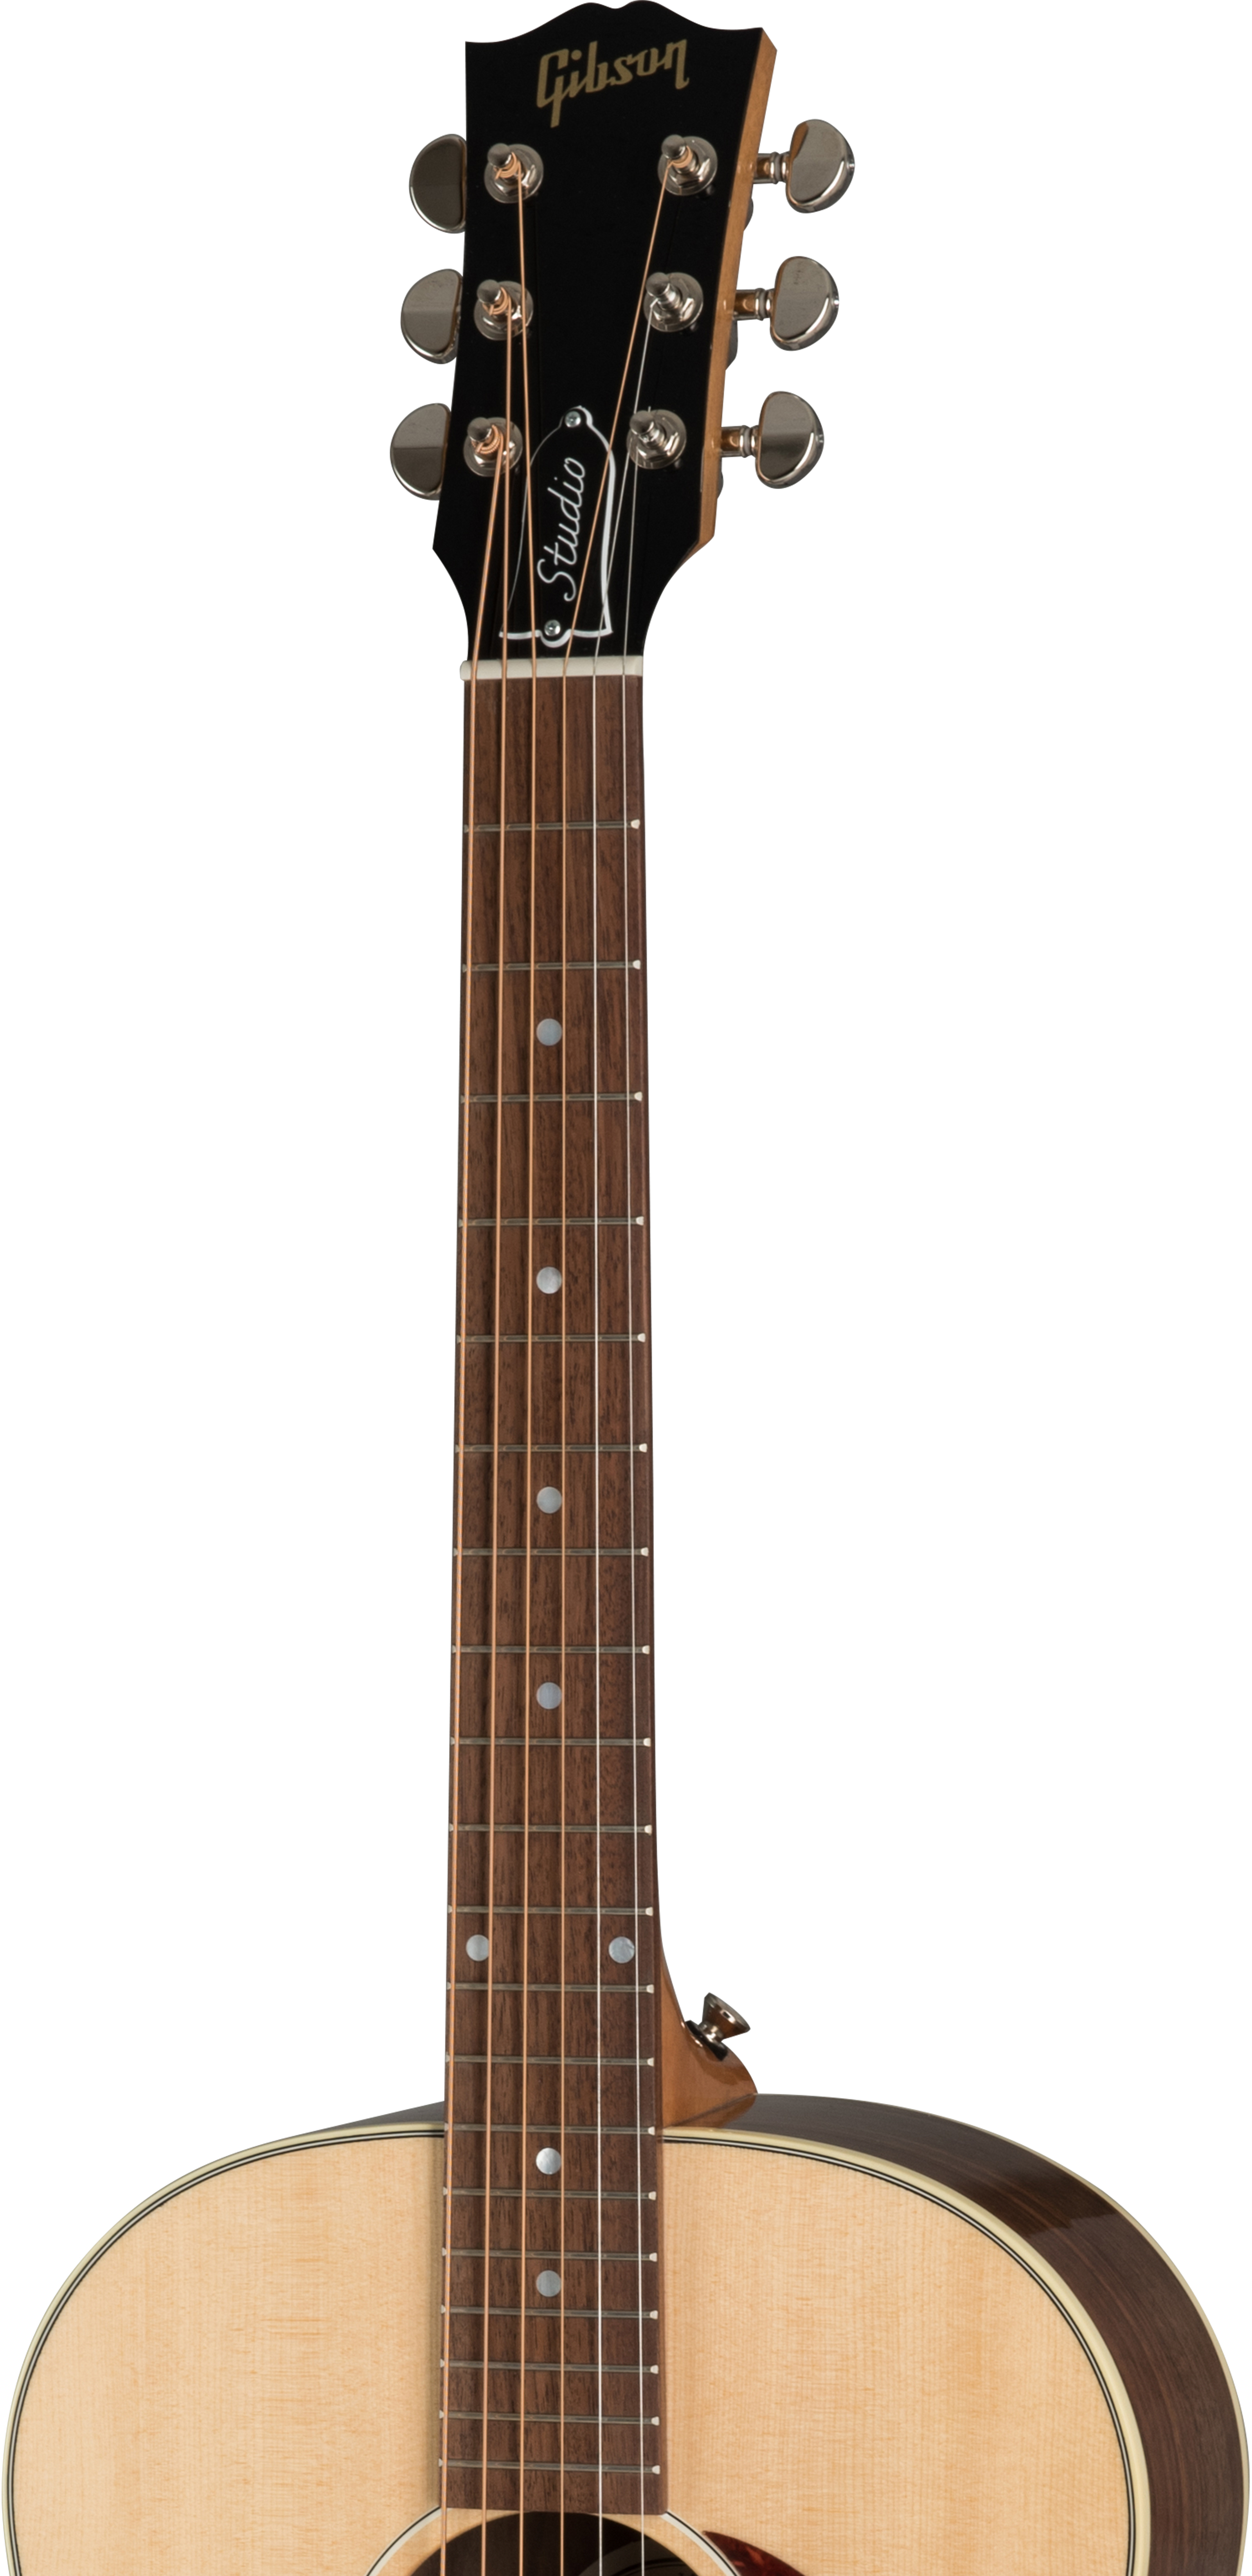 Gibson J-45 Studio 2019 Epicea Noyer Rw - Antique Natural - Guitarra acústica & electro - Variation 3